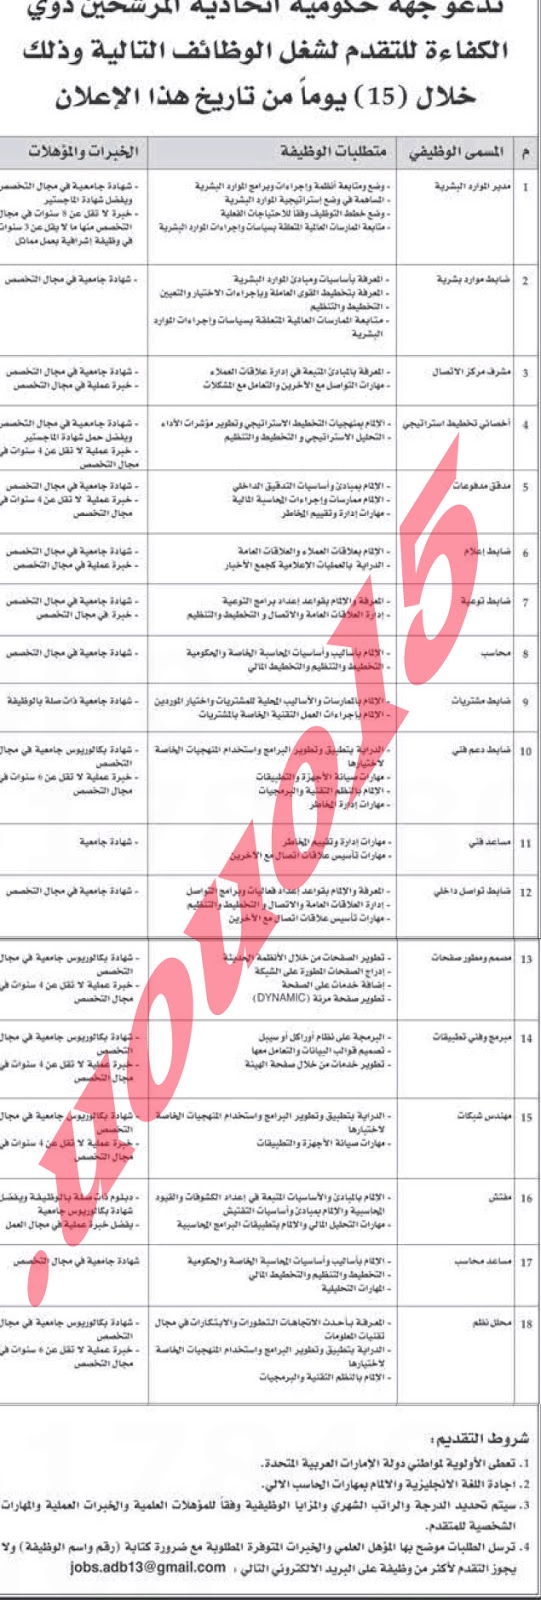 وظائف شاغرة من جريدة الاتحاد الاماراتية اليوم الاربعاء 13/2/2013 %D8%A7%D9%84%D8%A7%D8%AA%D8%AD%D8%A7%D8%AF+1